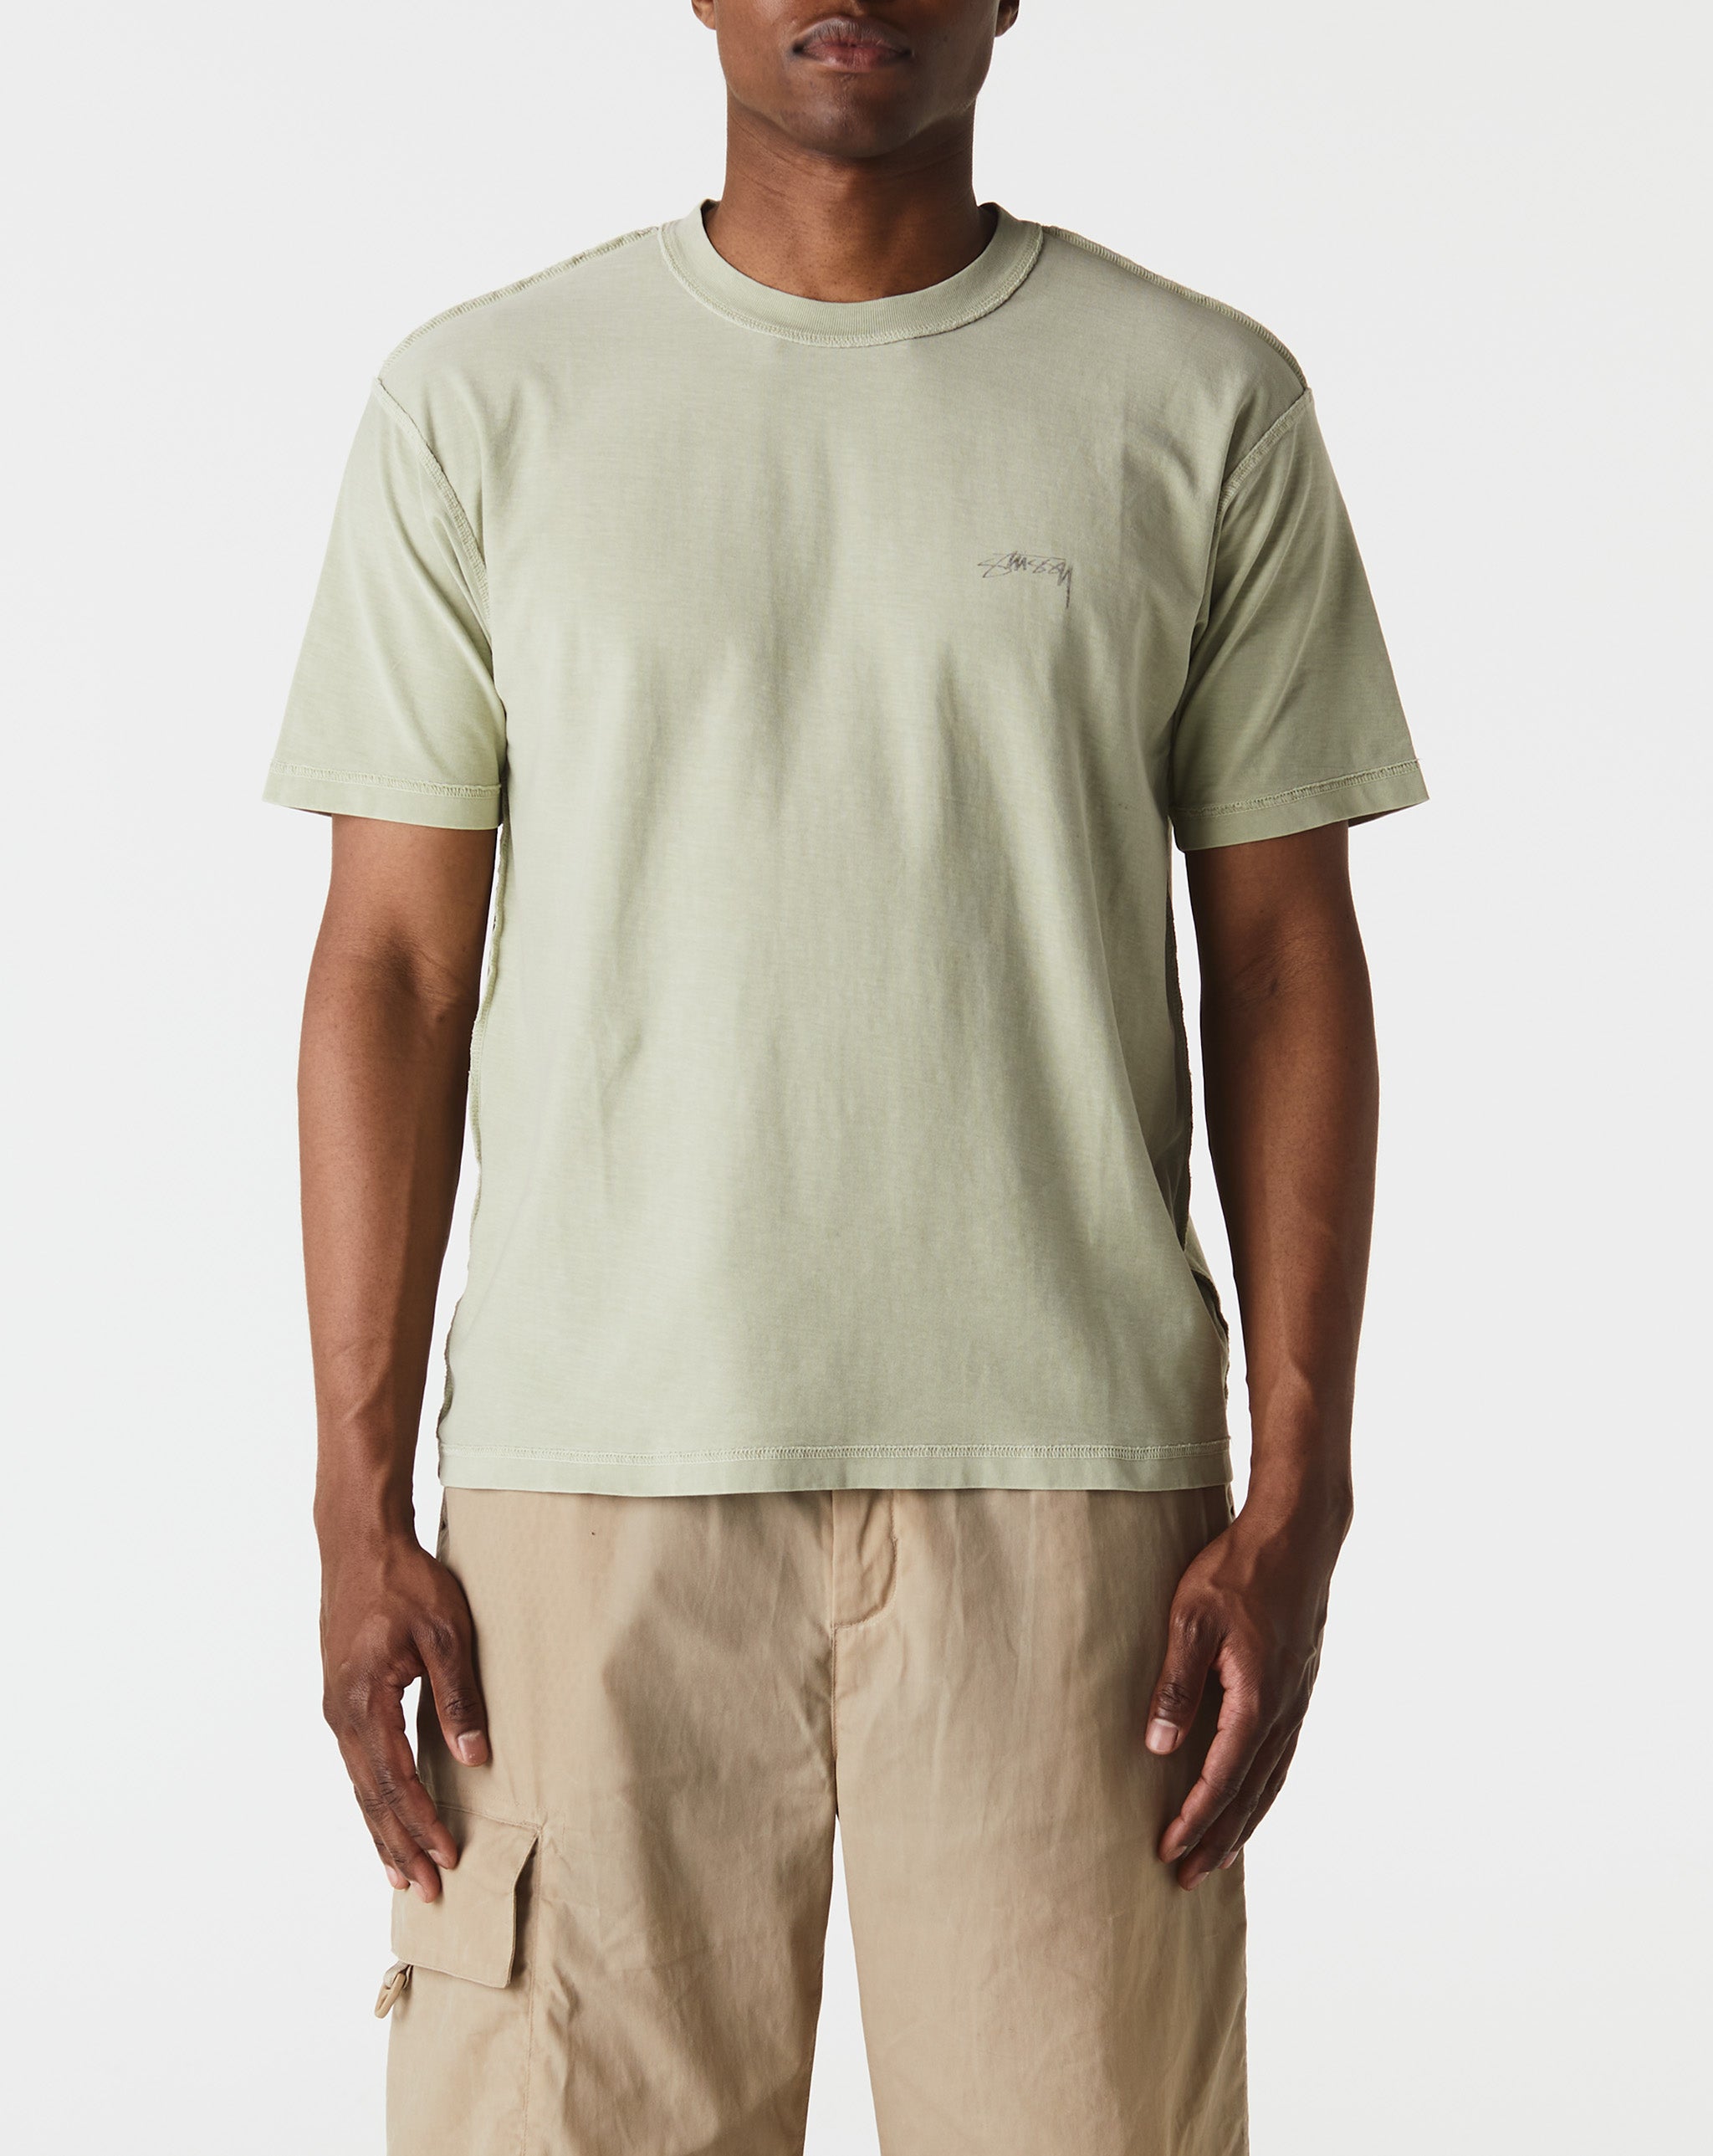 Stüssy Lazy T-Shirt  - Cheap Urlfreeze Jordan outlet